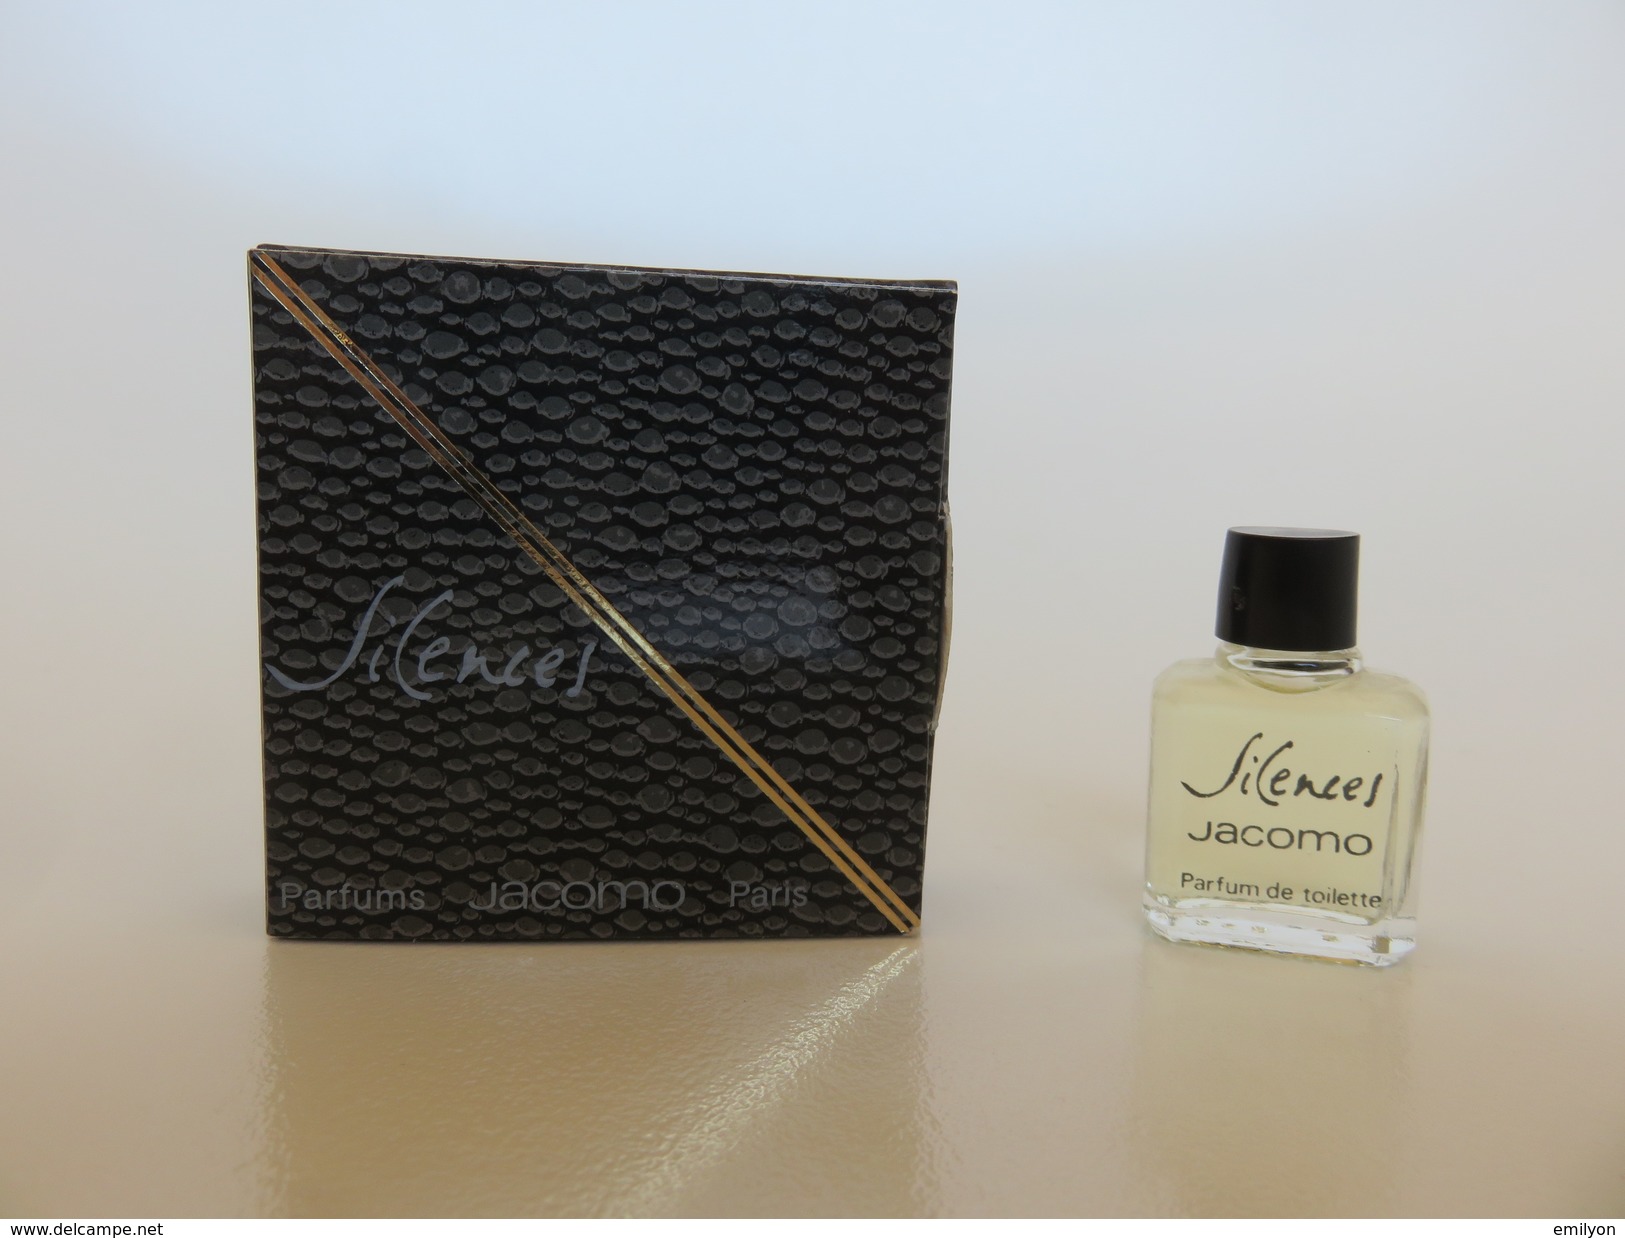 Silences - Jacomo - Parfum De Toilette - 2.5 ML - Miniaturen Herrendüfte (mit Verpackung)